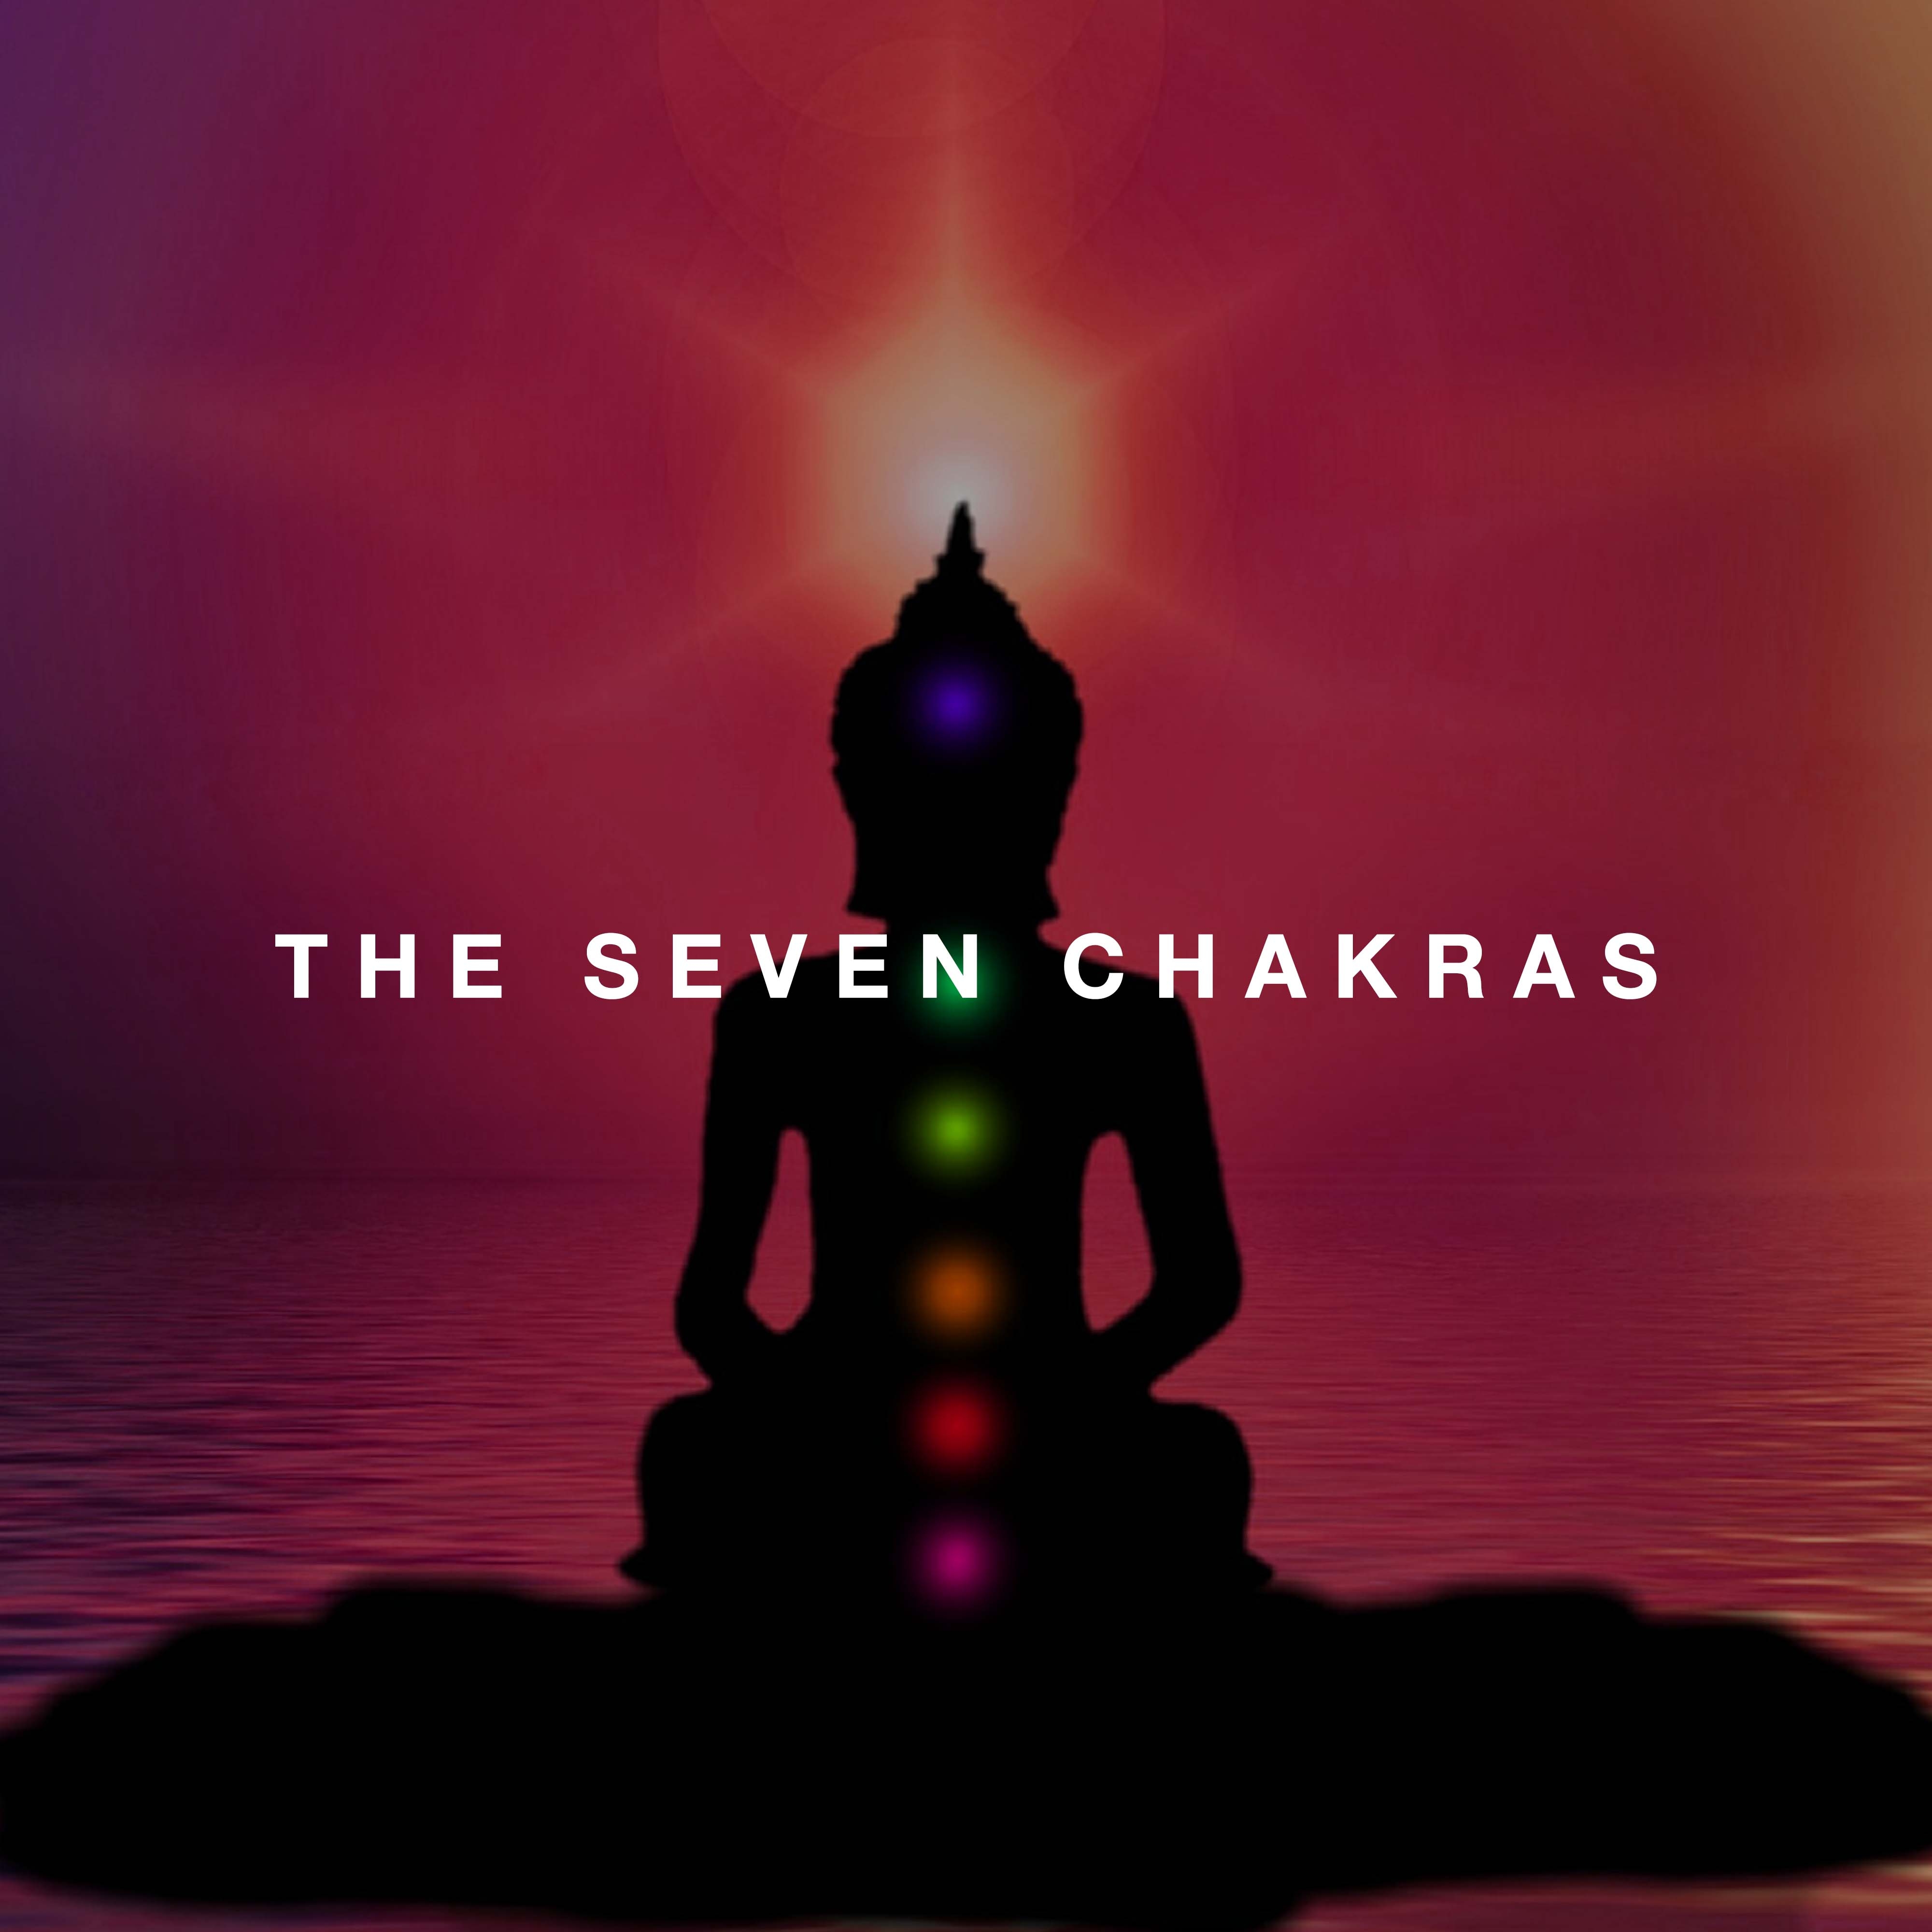 The Seven Chakras, Balance and Chakra Healing Music